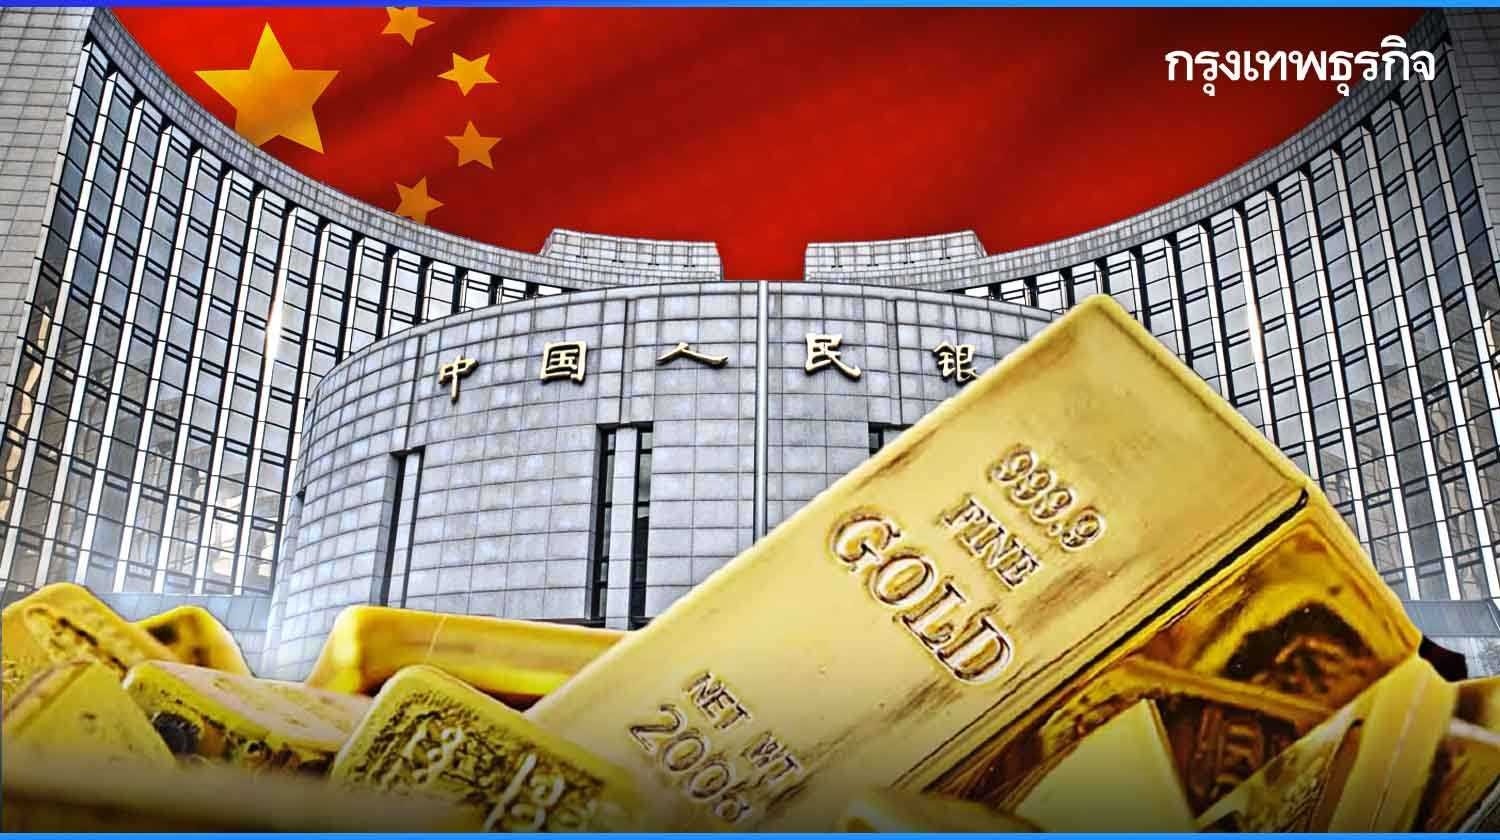 ‘ธนาคารกลางจีน’ ชะลอซื้อทองคำ หลังทุบสถิติตุนทอง 18 เดือนติด